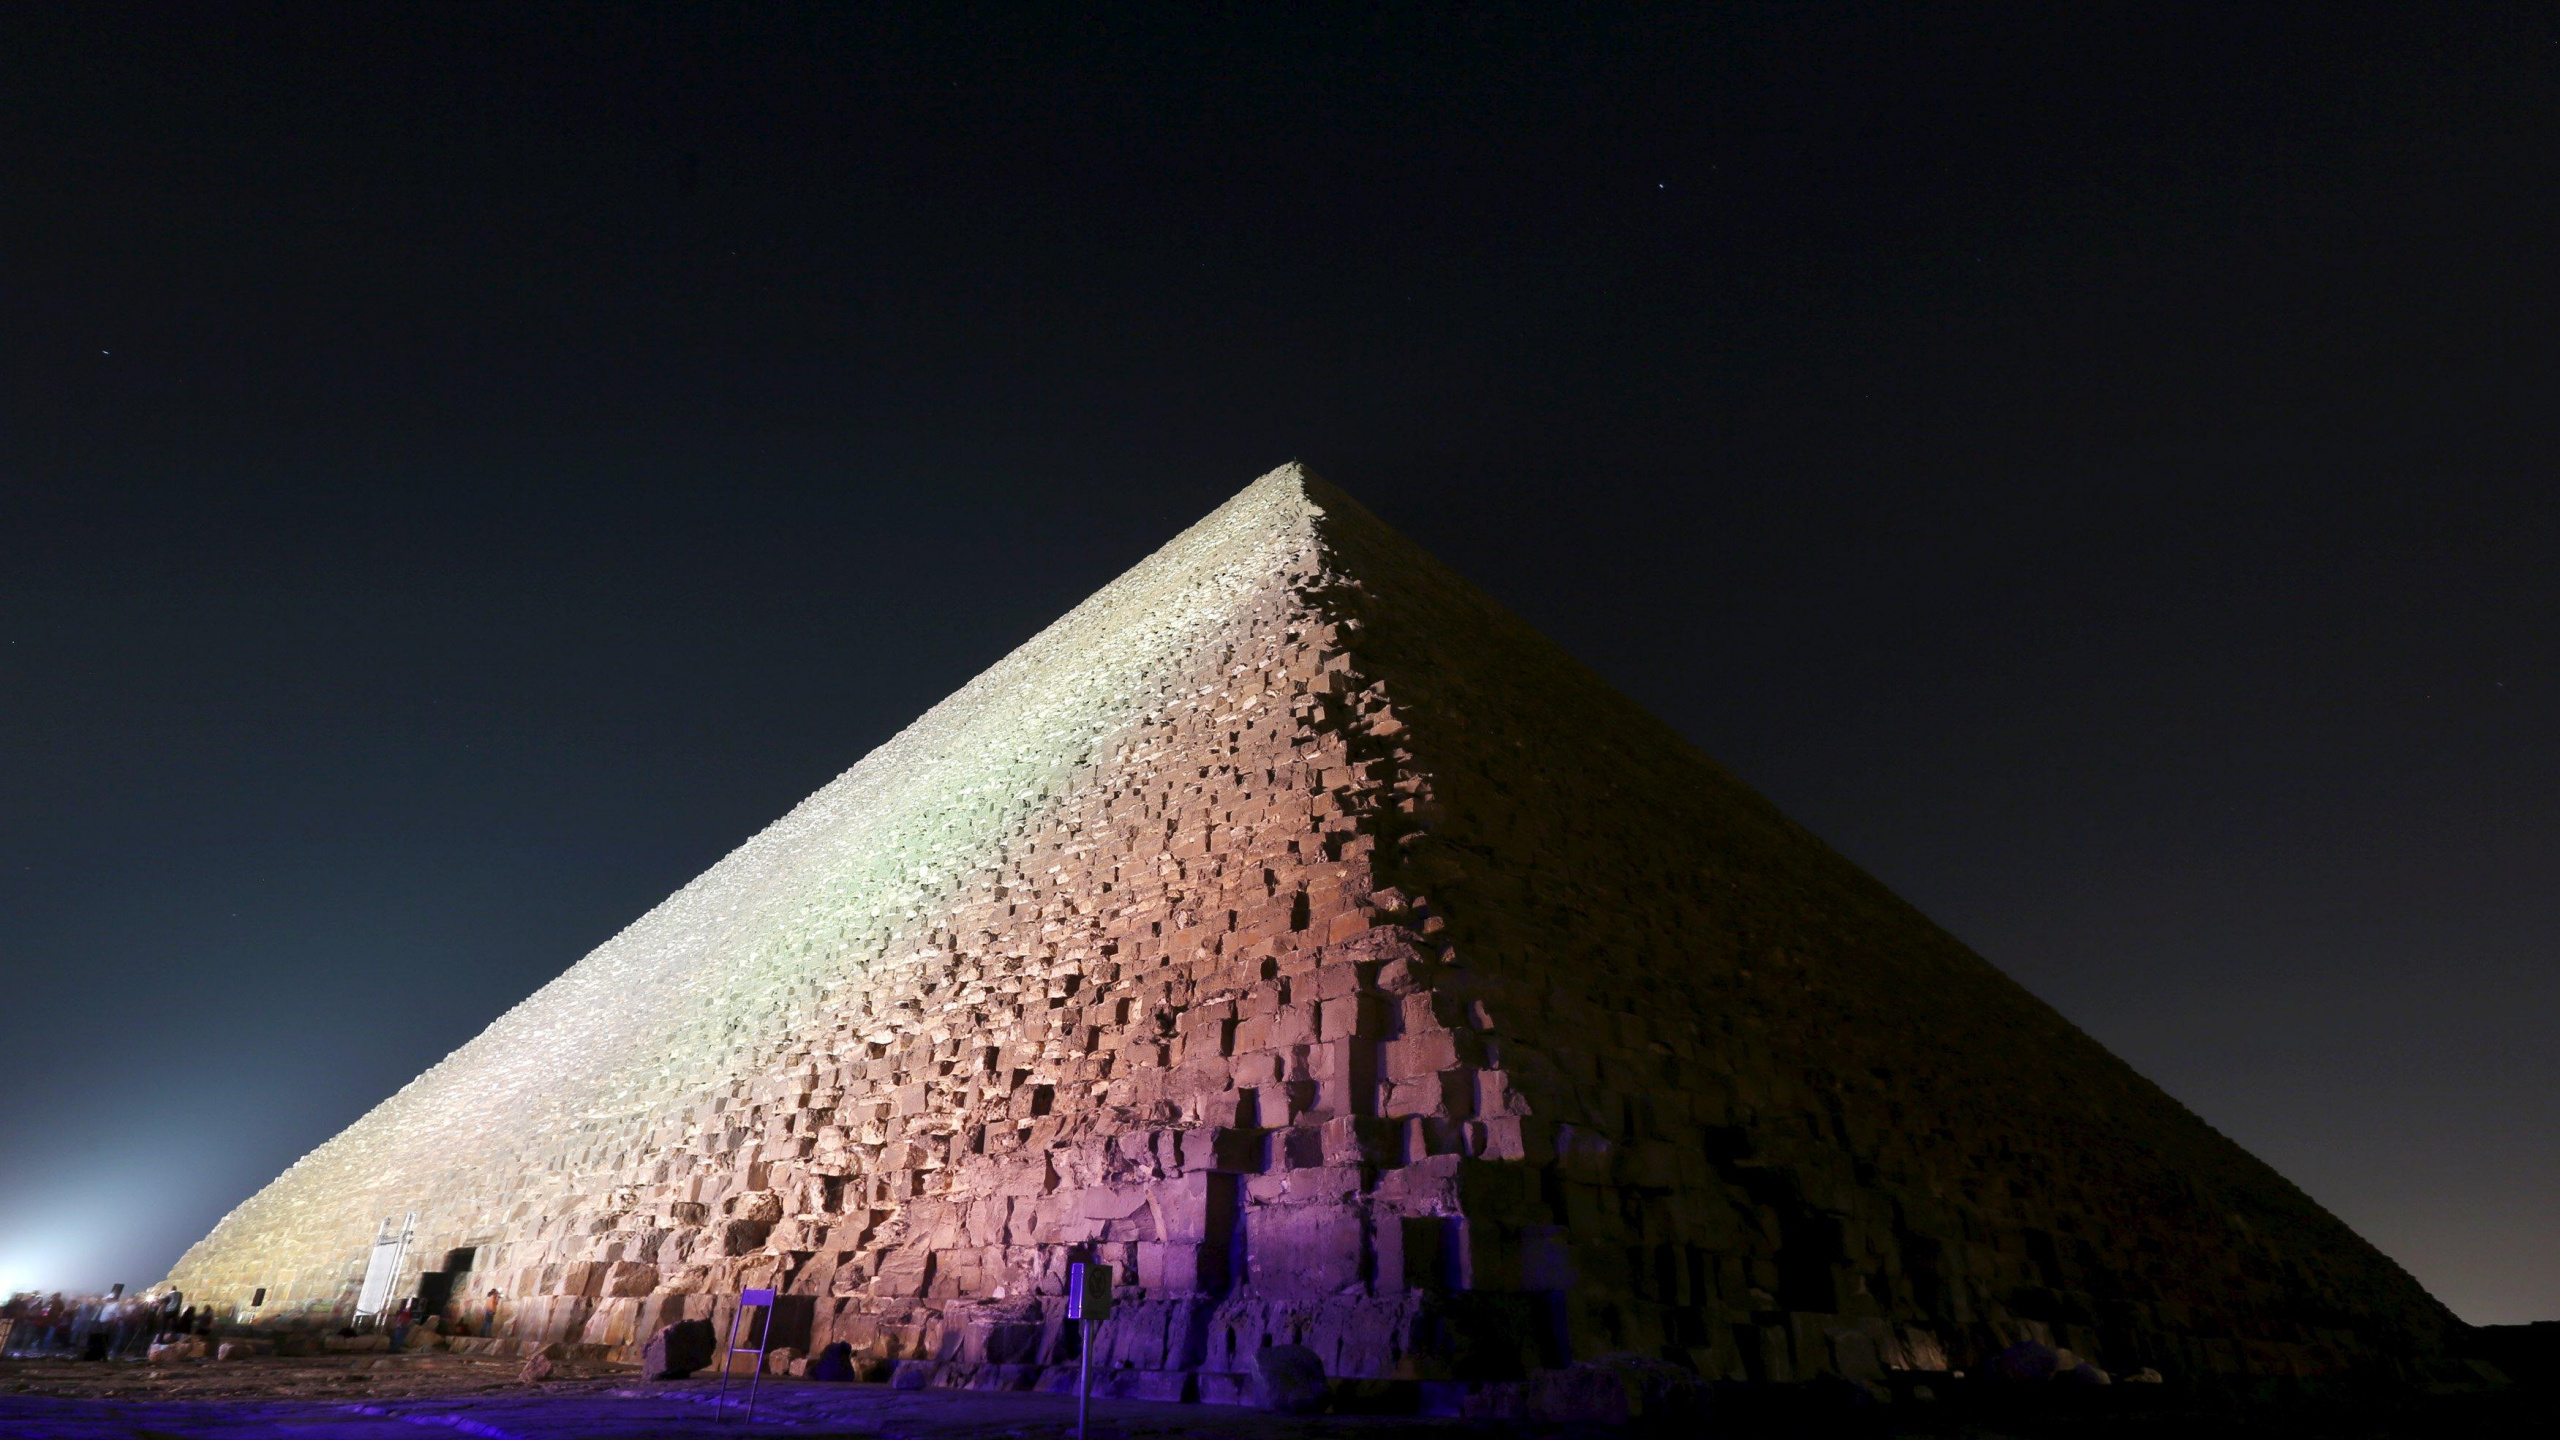 金字塔, 埃及金字塔, 里程碑, 纪念碑, 三角形 壁纸 2560x1440 允许